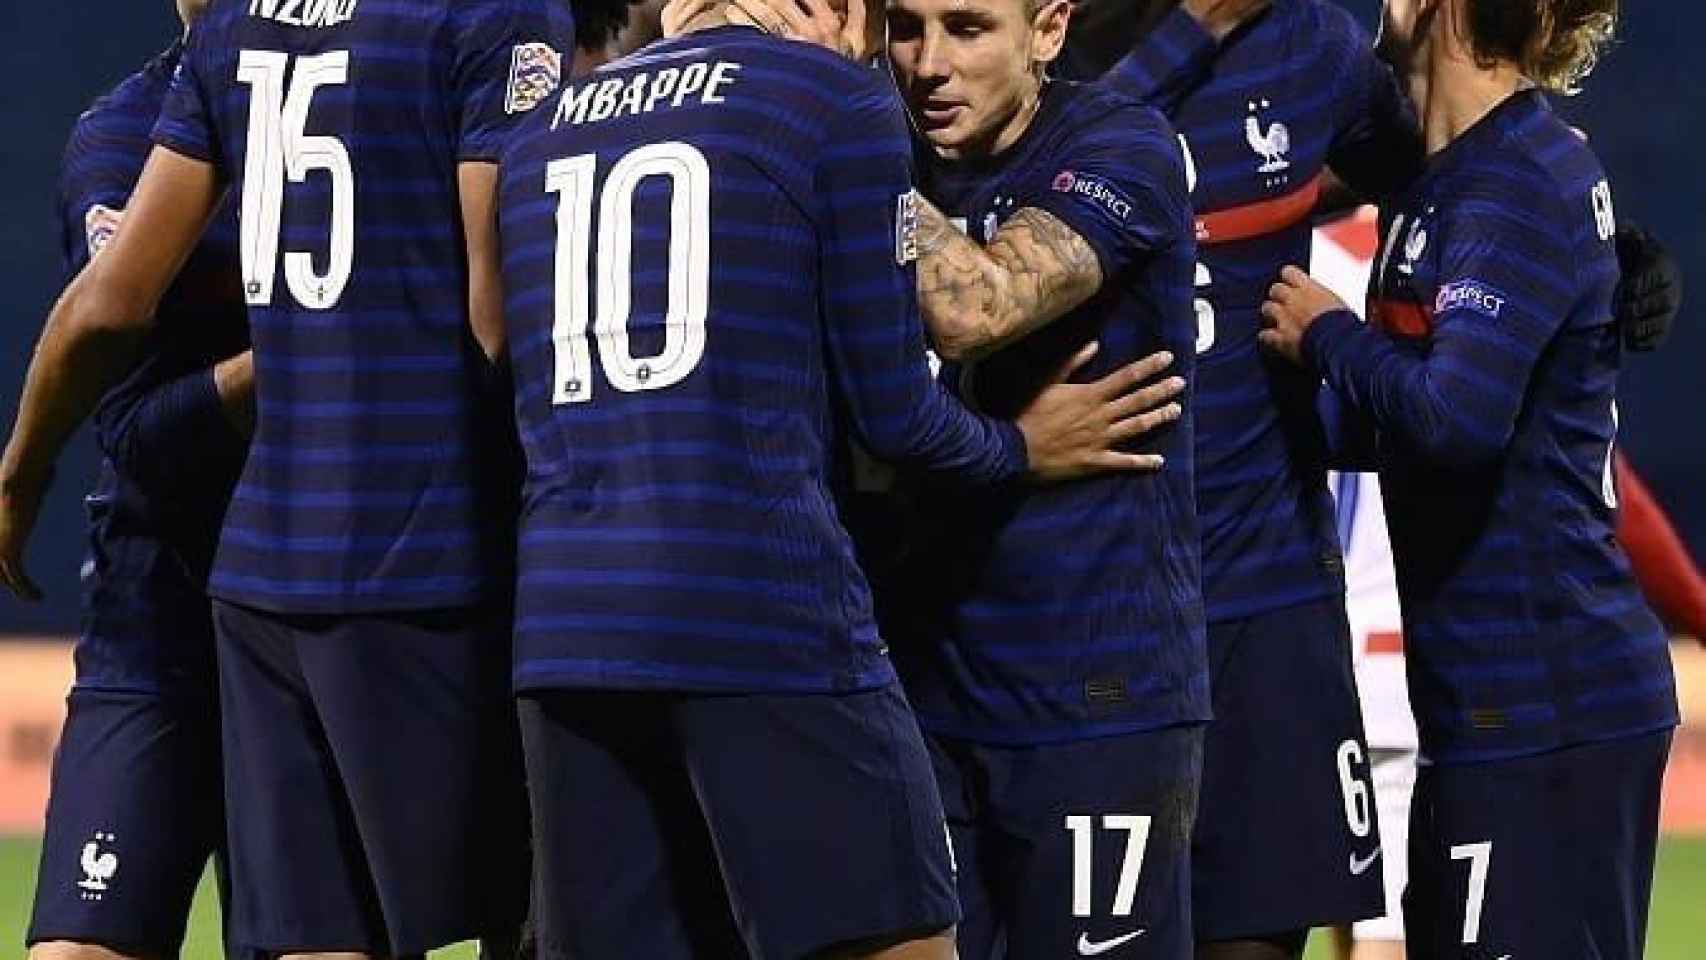 El equipo de Francia celebrando un gol / redes